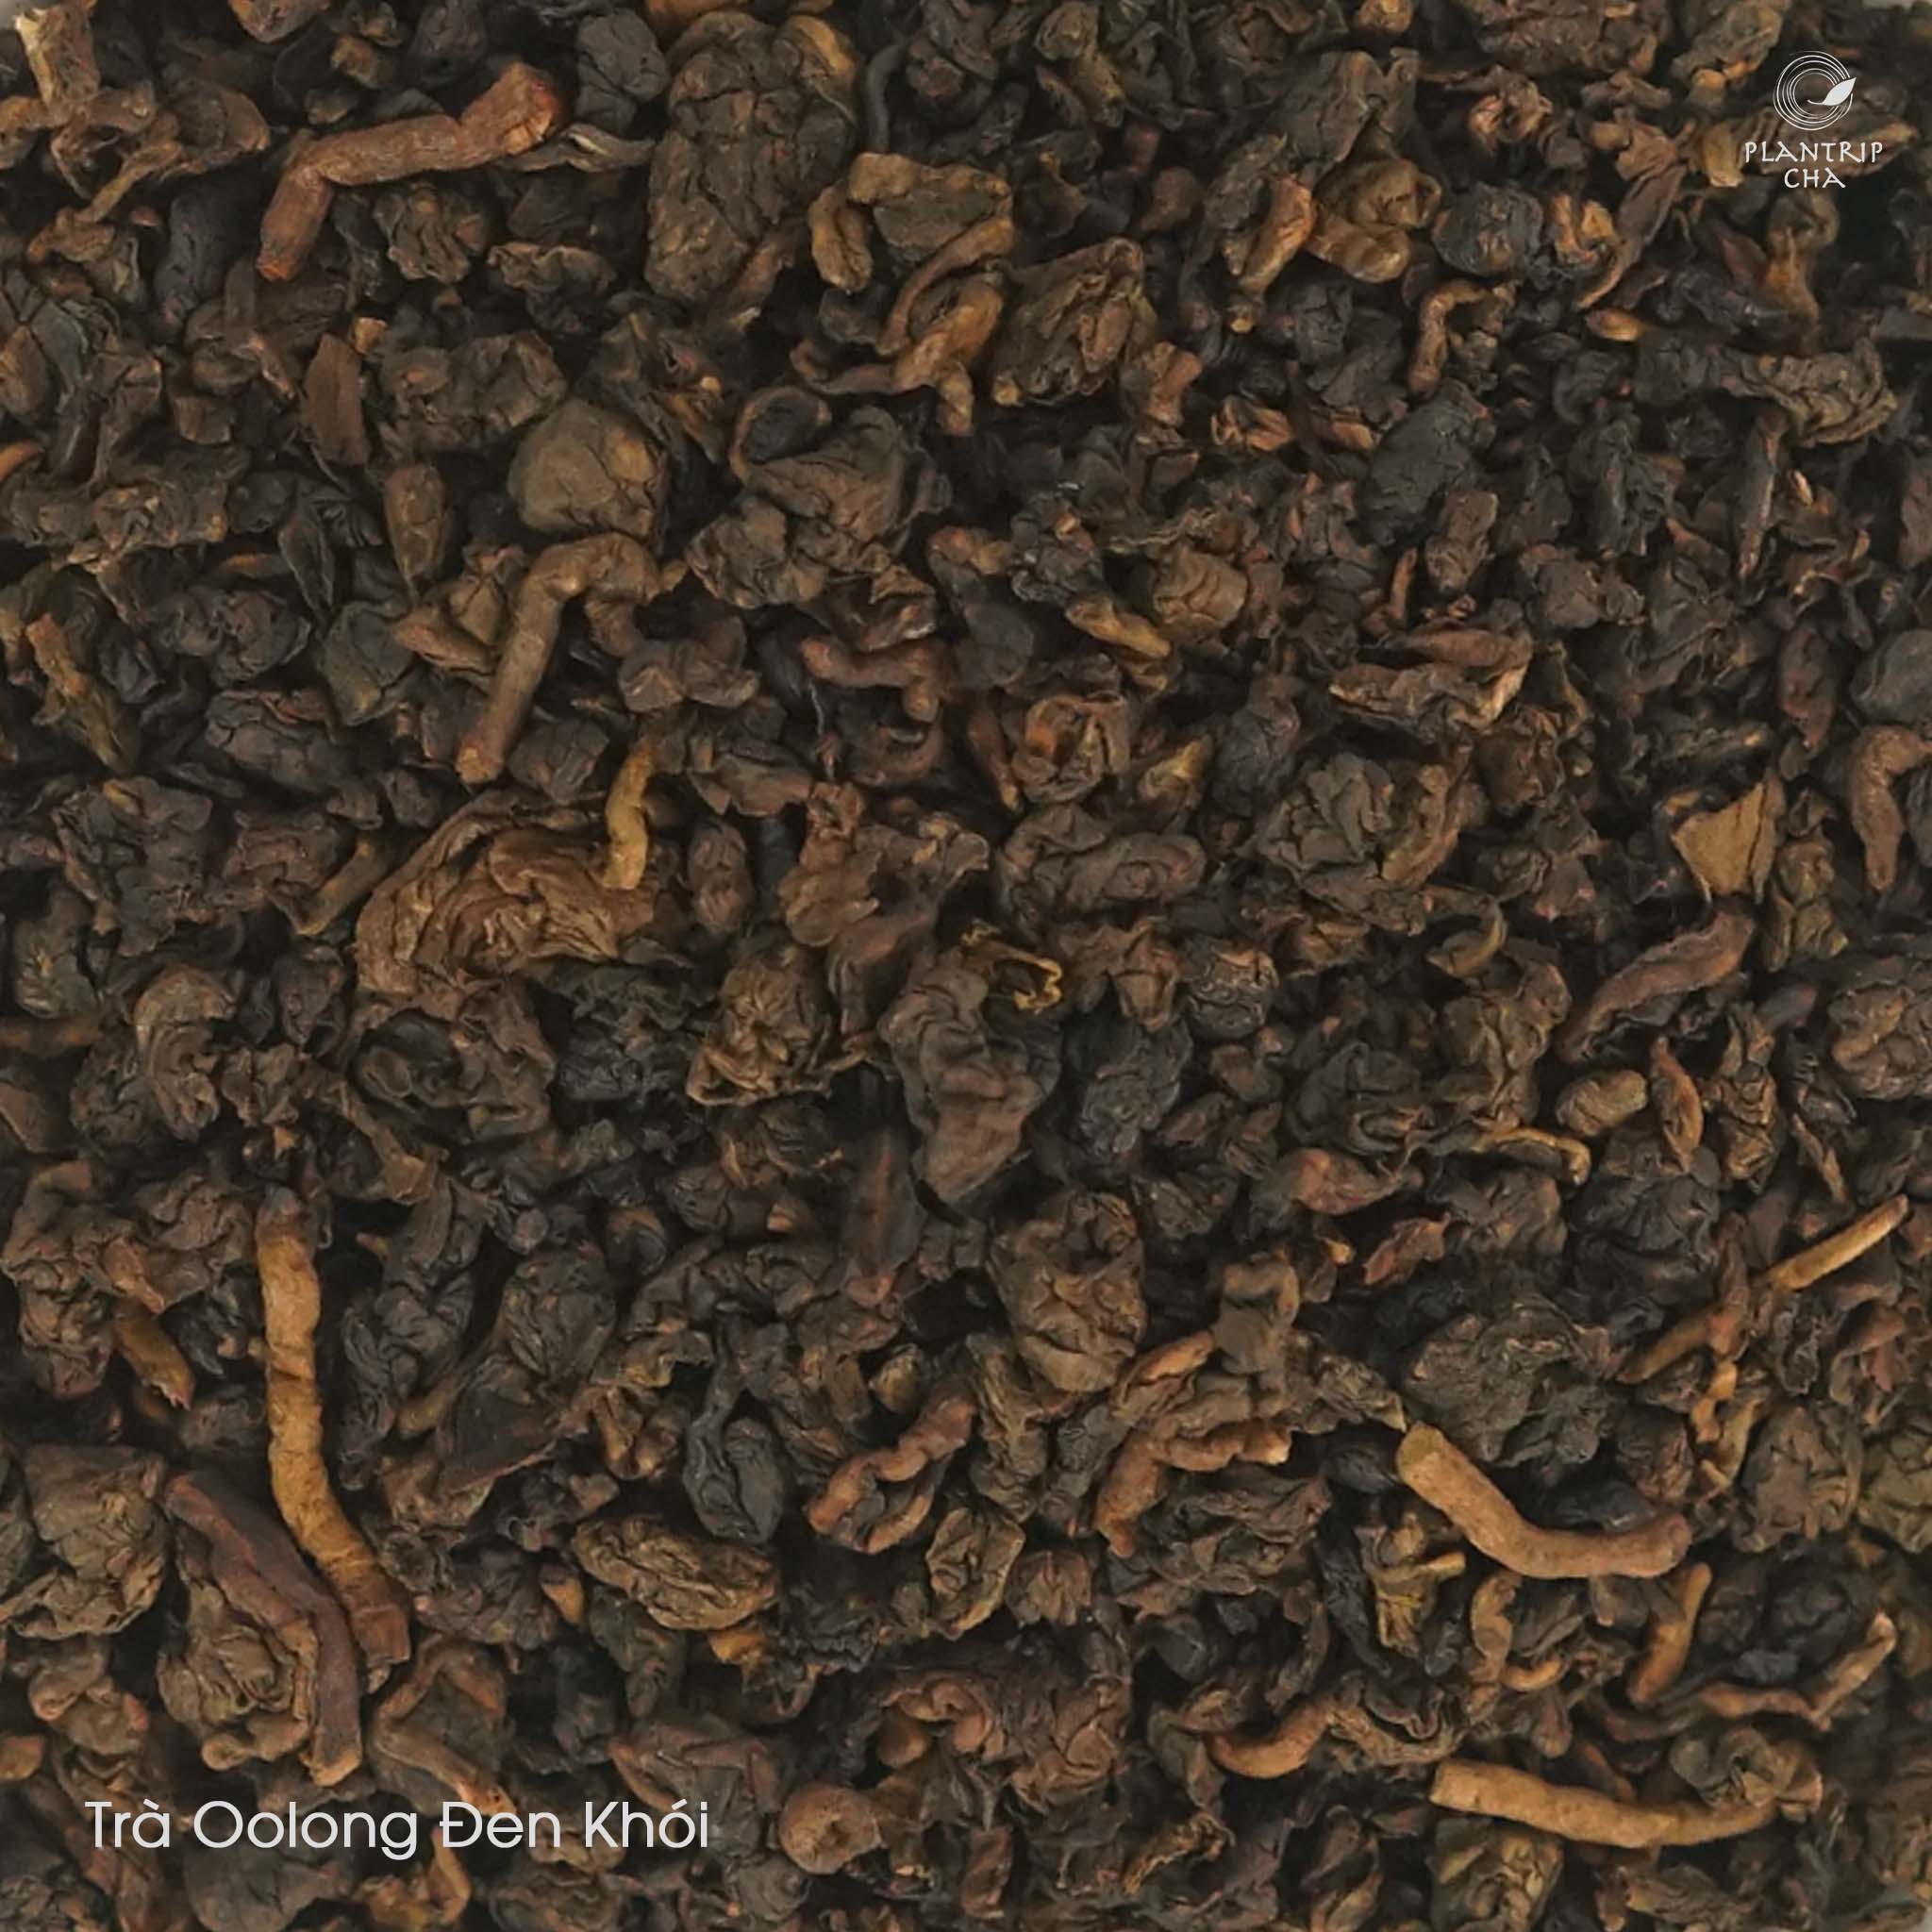 Nước Trà Oolong Đen Khói màu trà nâu ánh vàng, hương khói đặc trưng, đậm vị, lưu hương lâu.